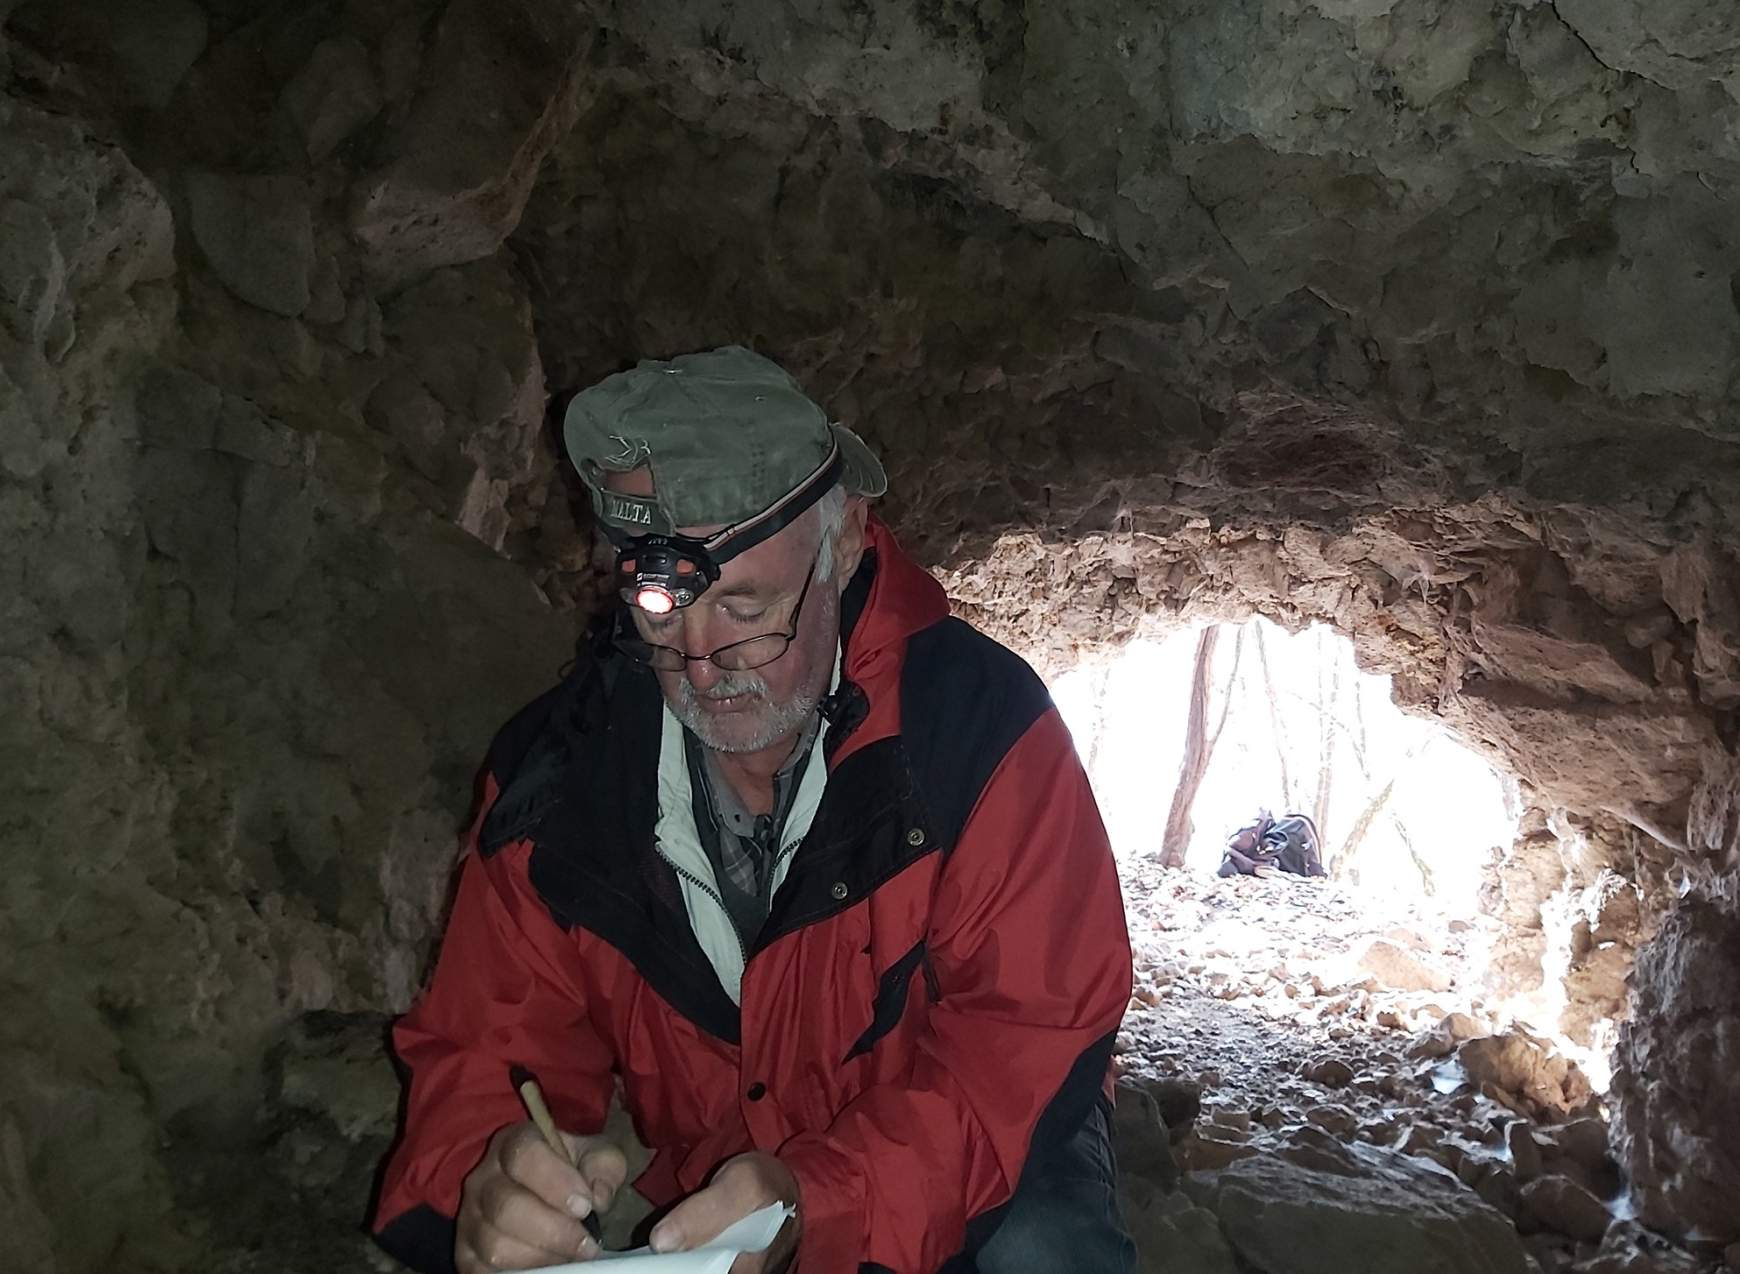  Gaál Lajos a barlang leírásán dolgozik